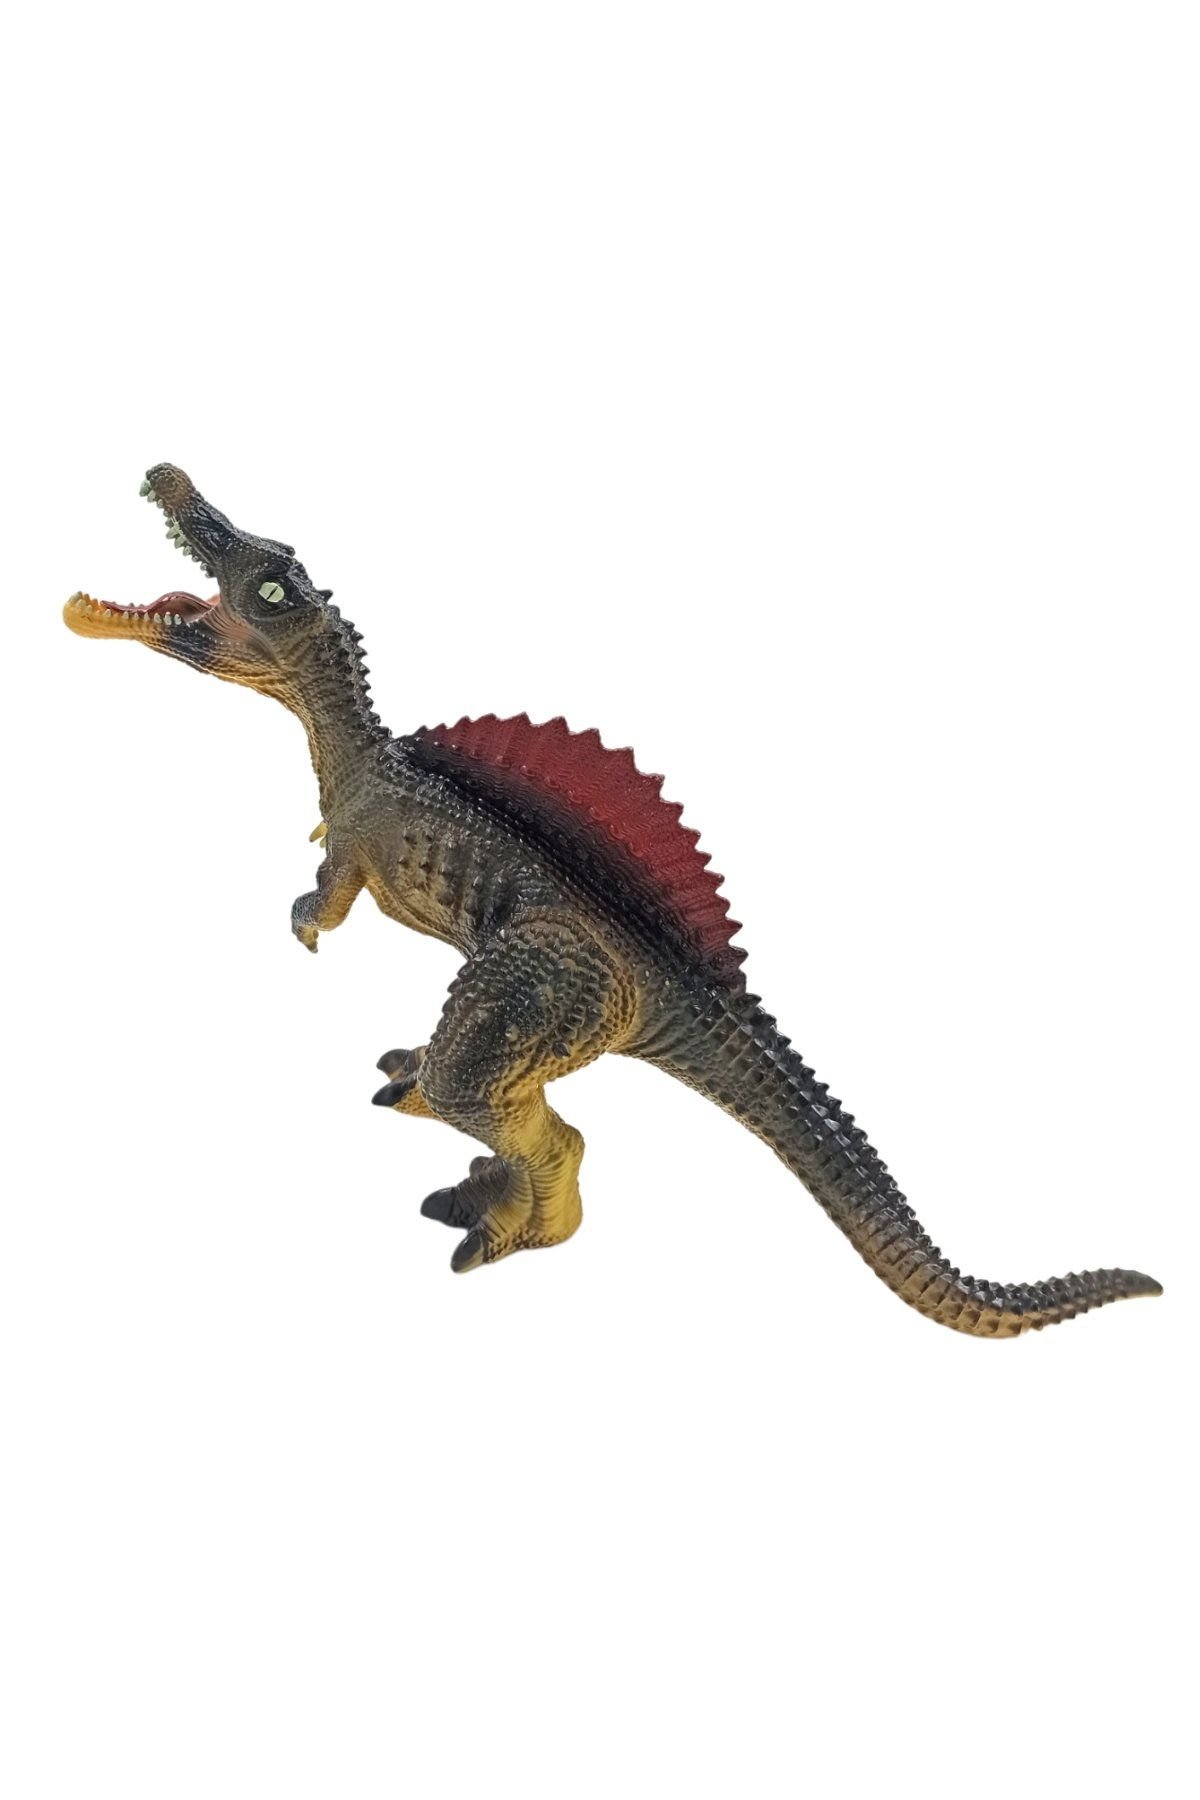 Geçmiş Zamanlara Yolculuk: 45 cm Büyük Boy Sesli Oyuncak Dinozor Spinosaurus